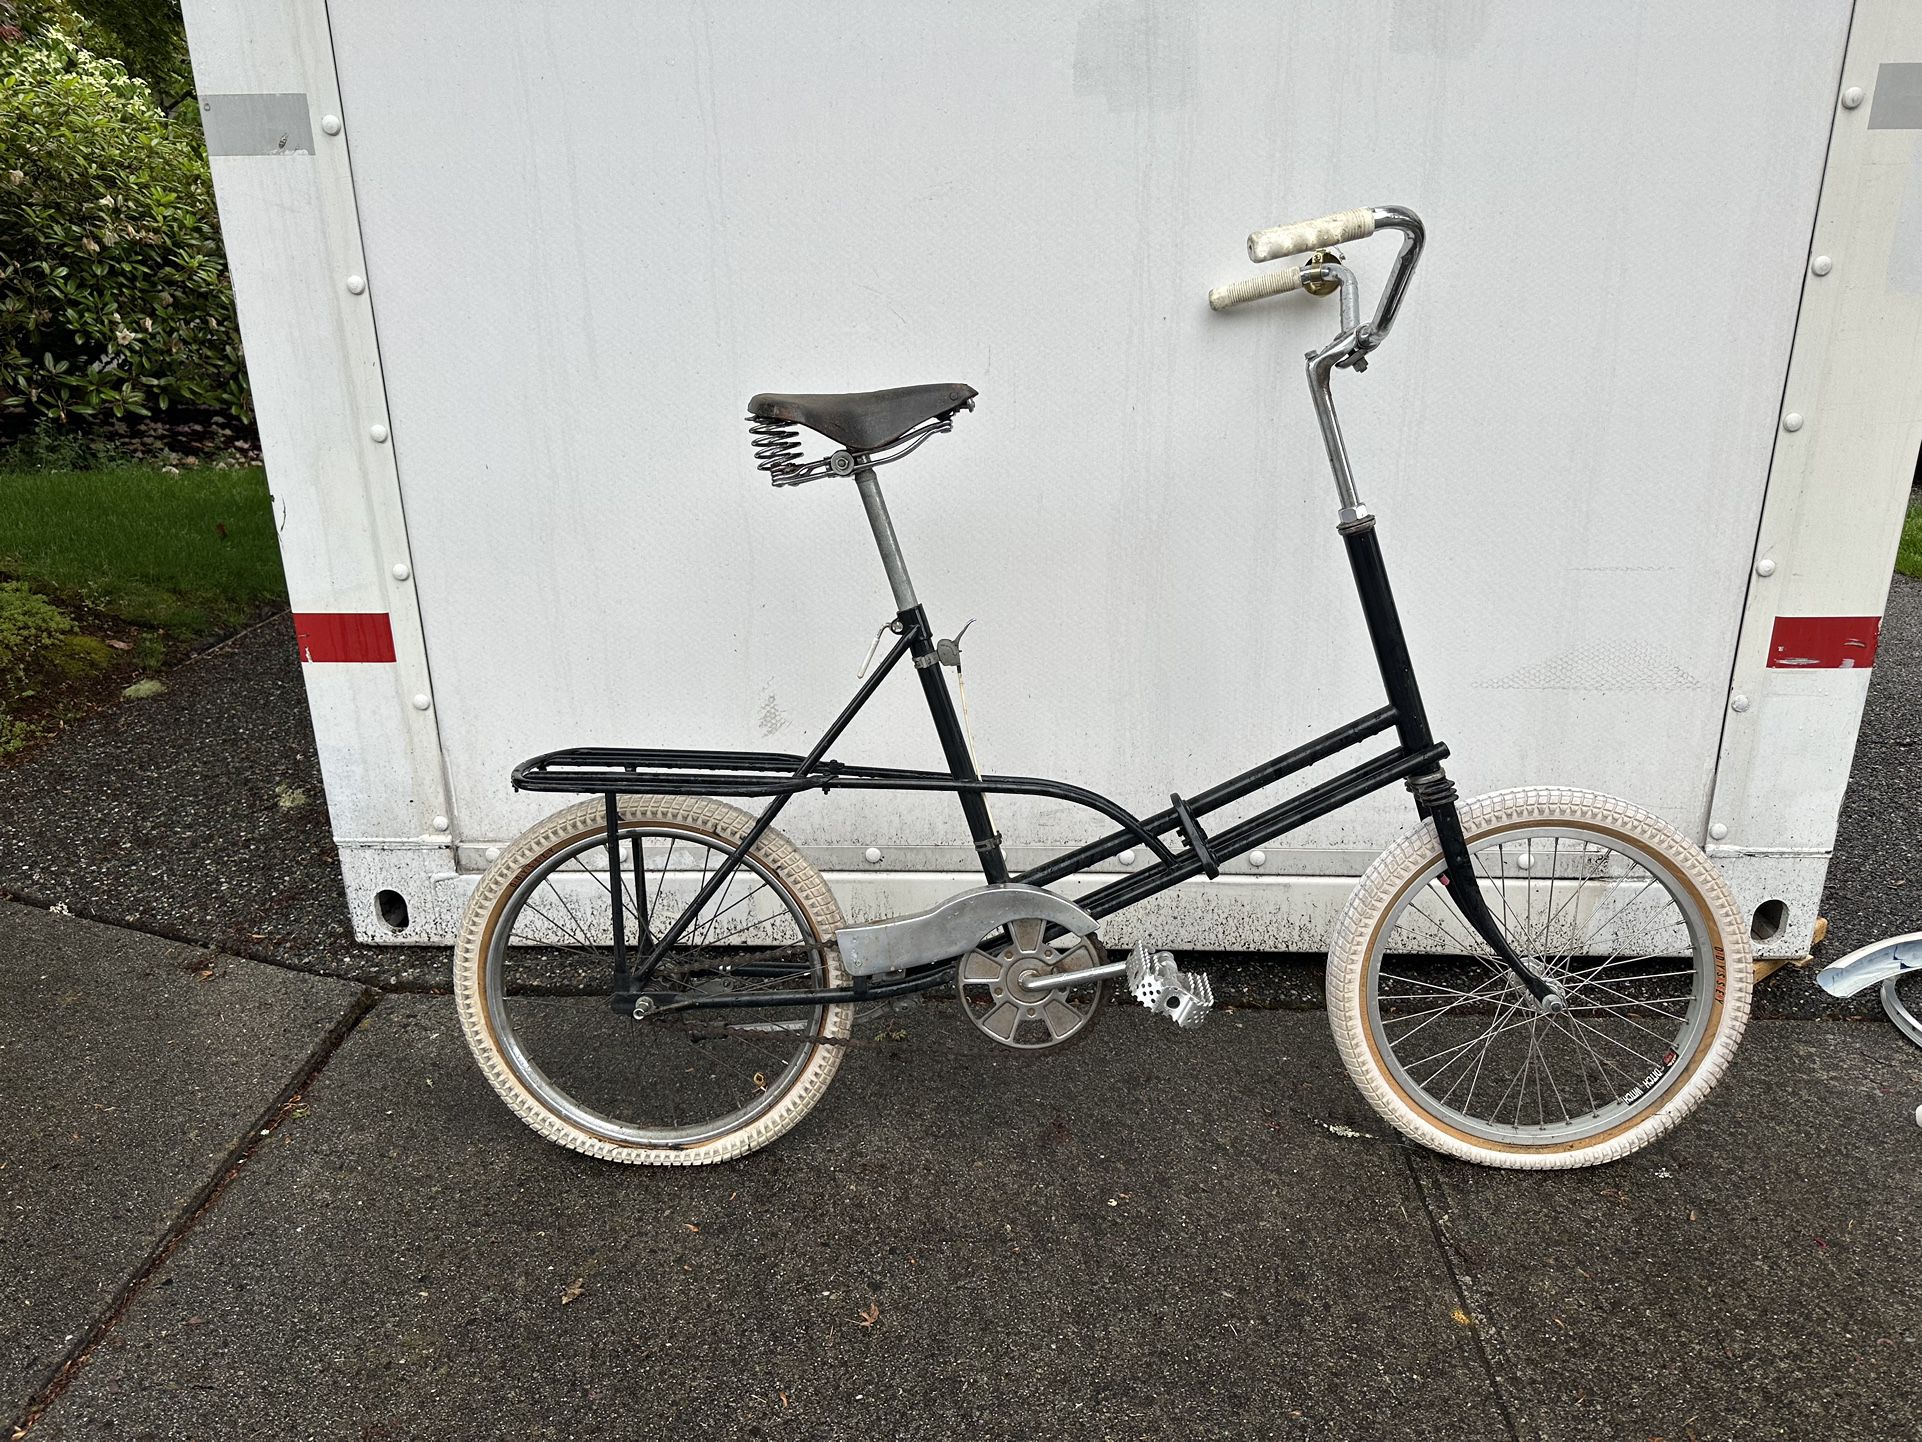 Sears Totecycle Gentleman’s Bike 